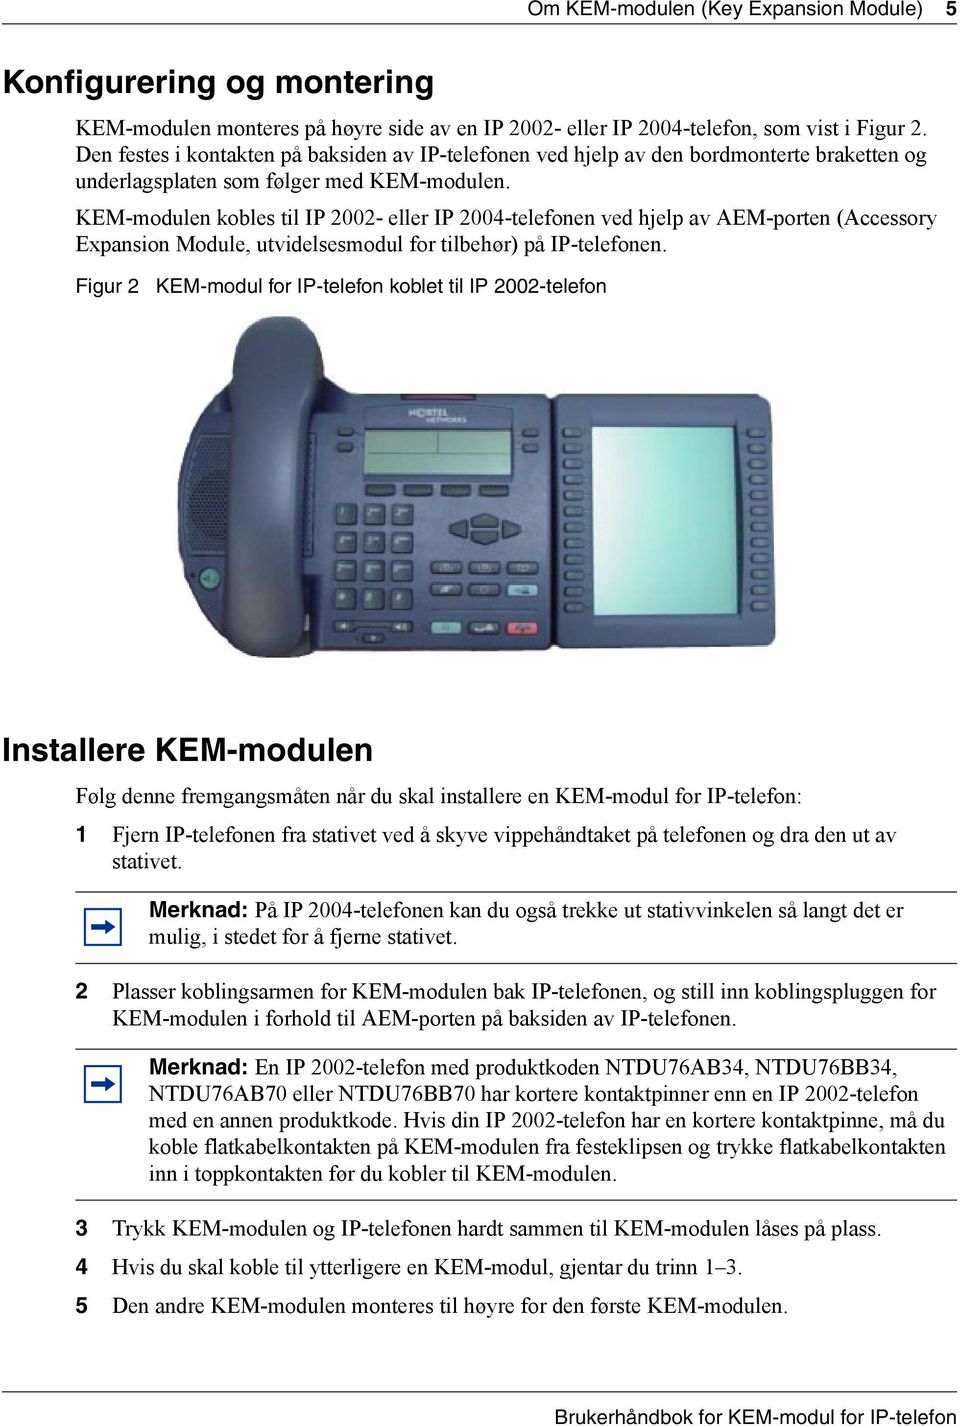 KEM-modulen kobles til IP 2002- eller IP 2004-telefonen ved hjelp av AEM-porten (Accessory Expansion Module, utvidelsesmodul for tilbehør) på IP-telefonen.